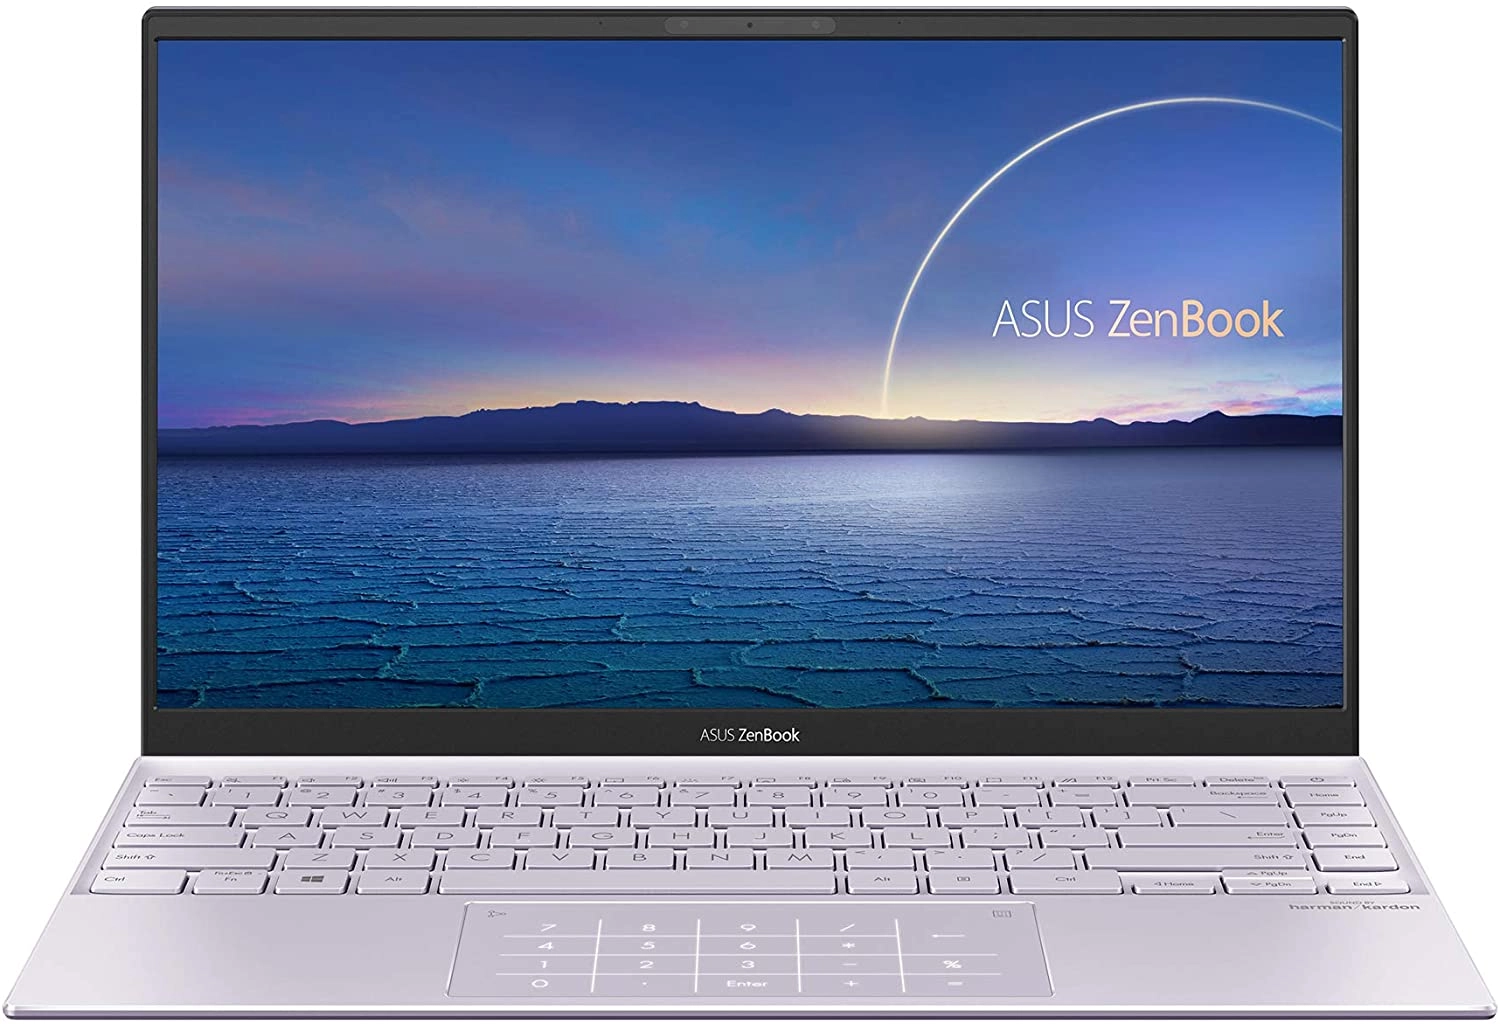 Asus UX425EA-BM019 laptop image